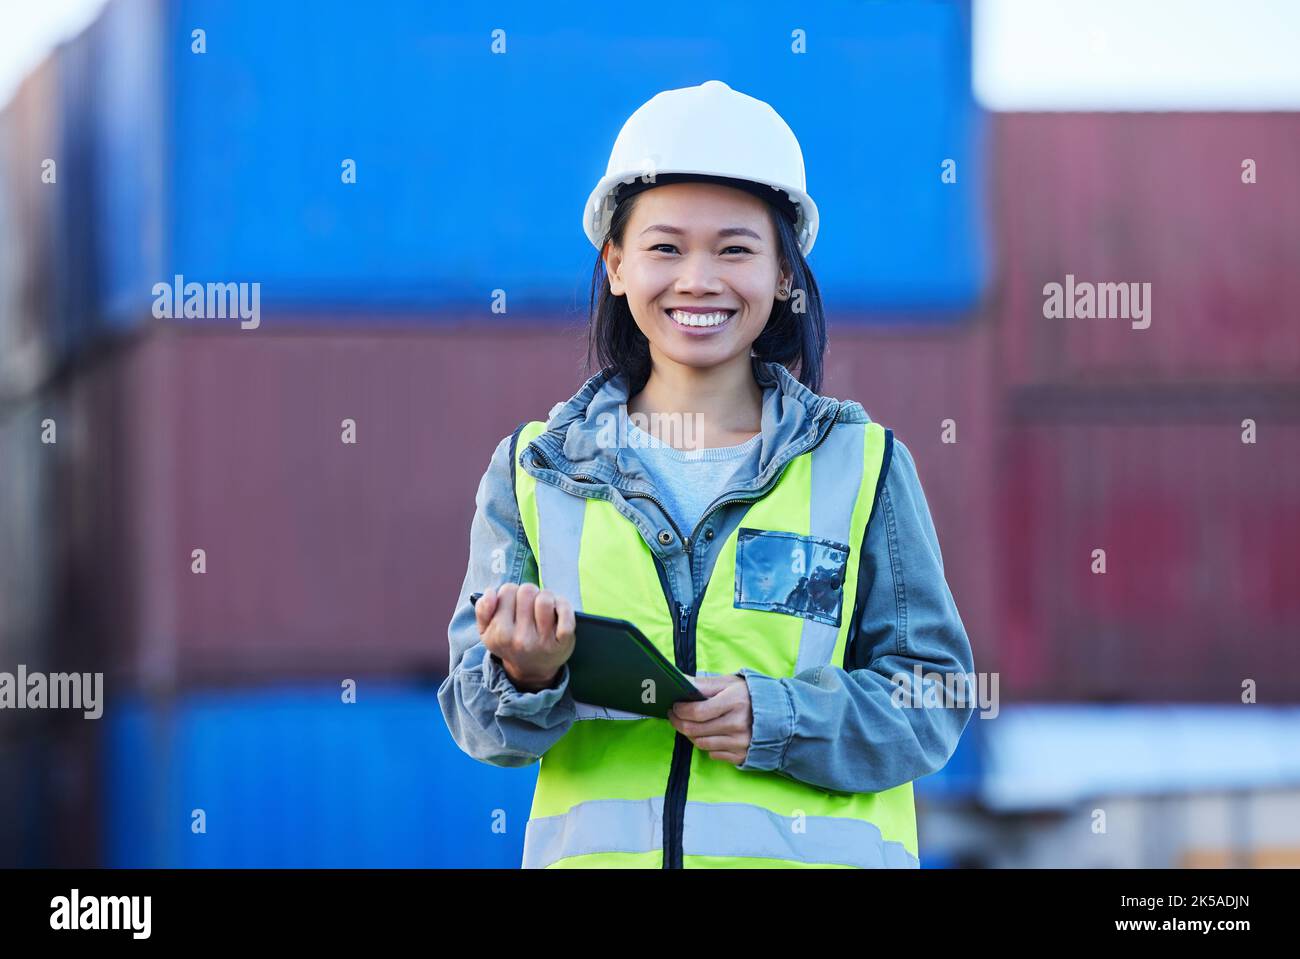 Logistica, asiatica e donna con tablet, container e controlla la consegna di merci, prodotti o dati di magazzino. Supply chain, sorriso e ritratto di Foto Stock